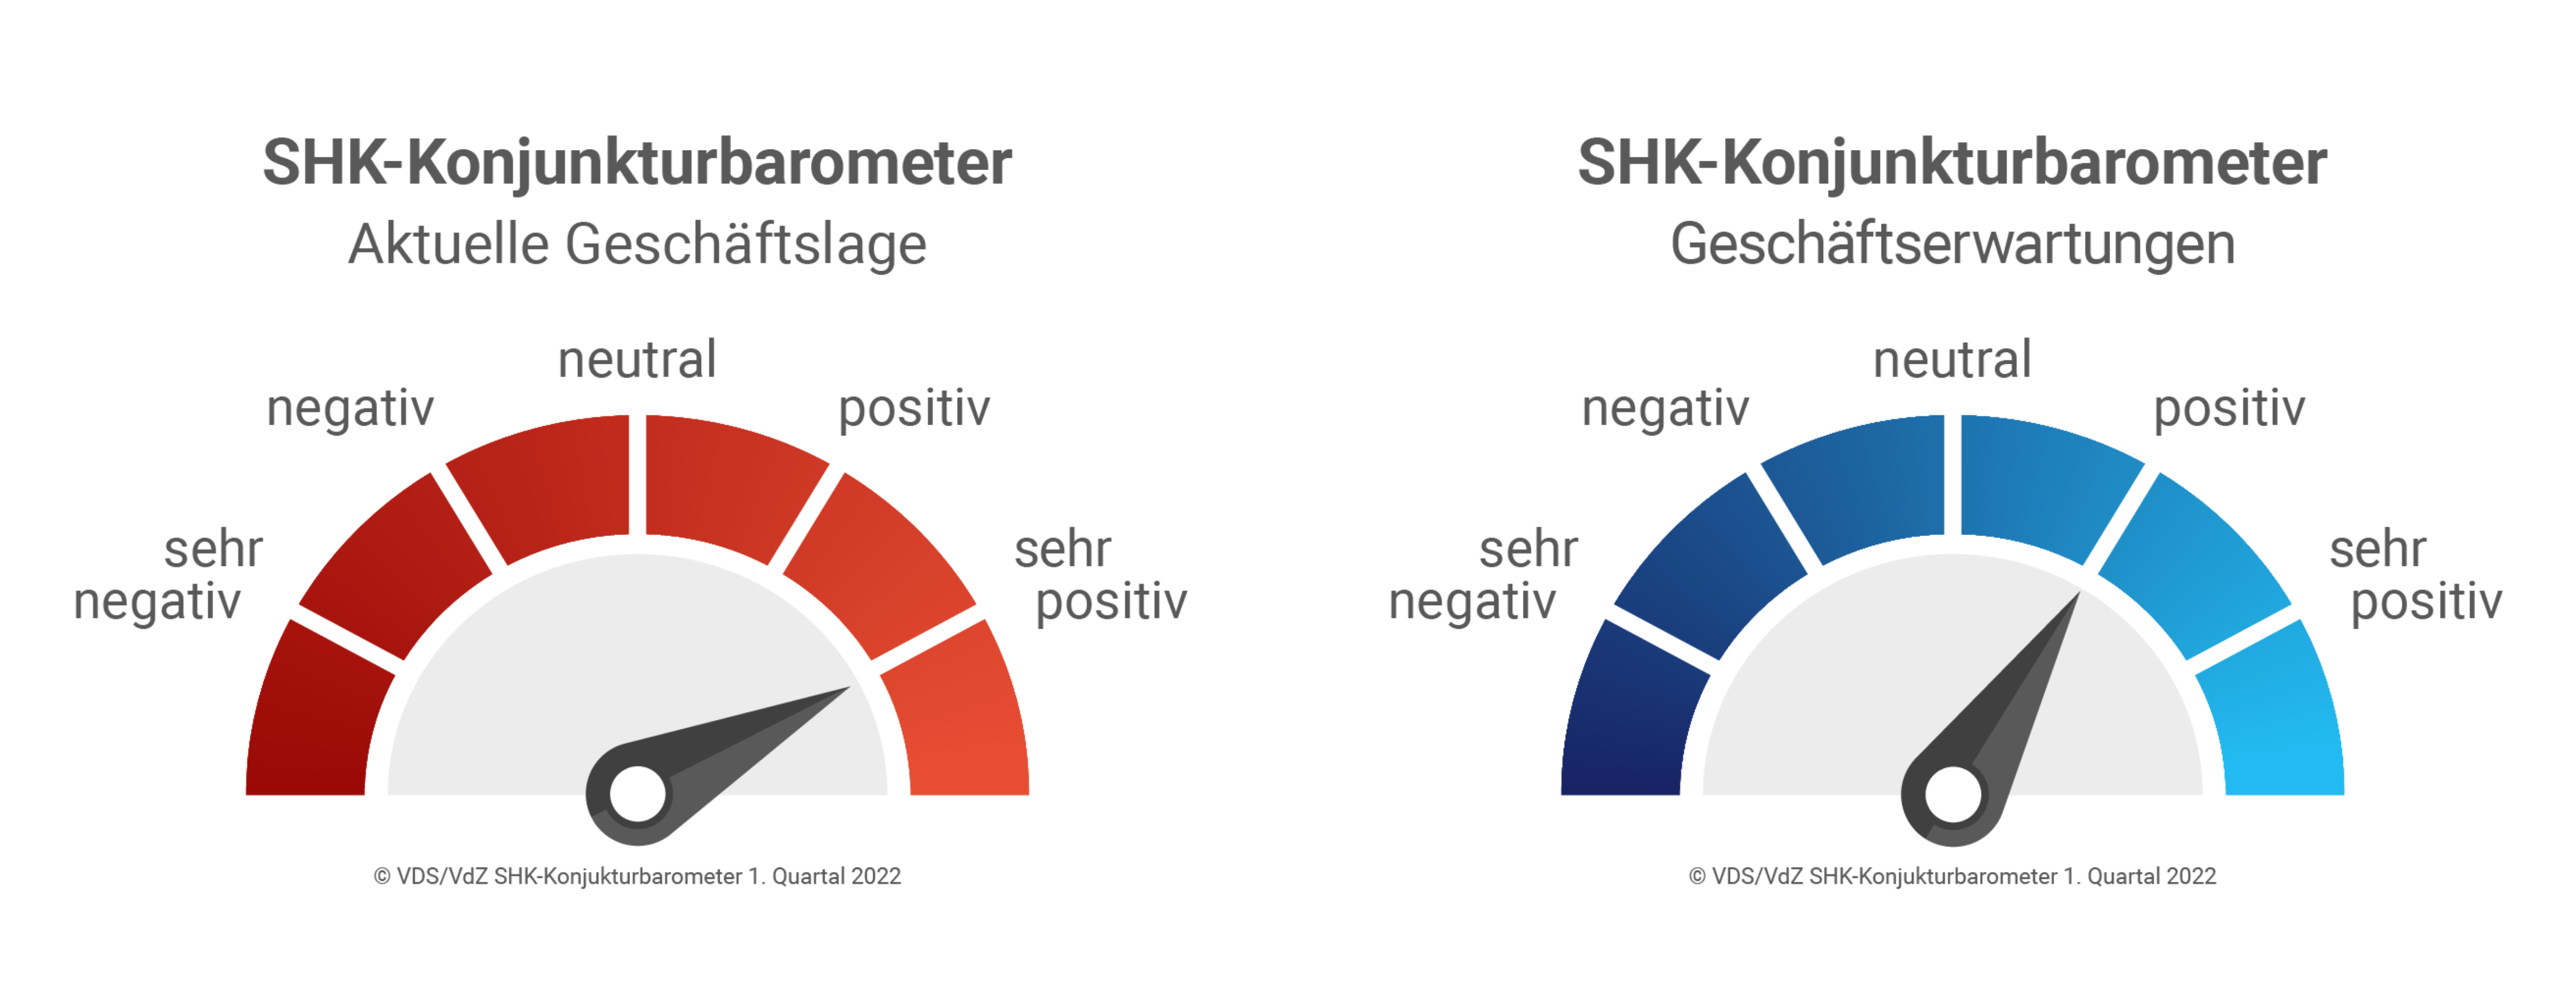 SHK-Konjunkturbarometer